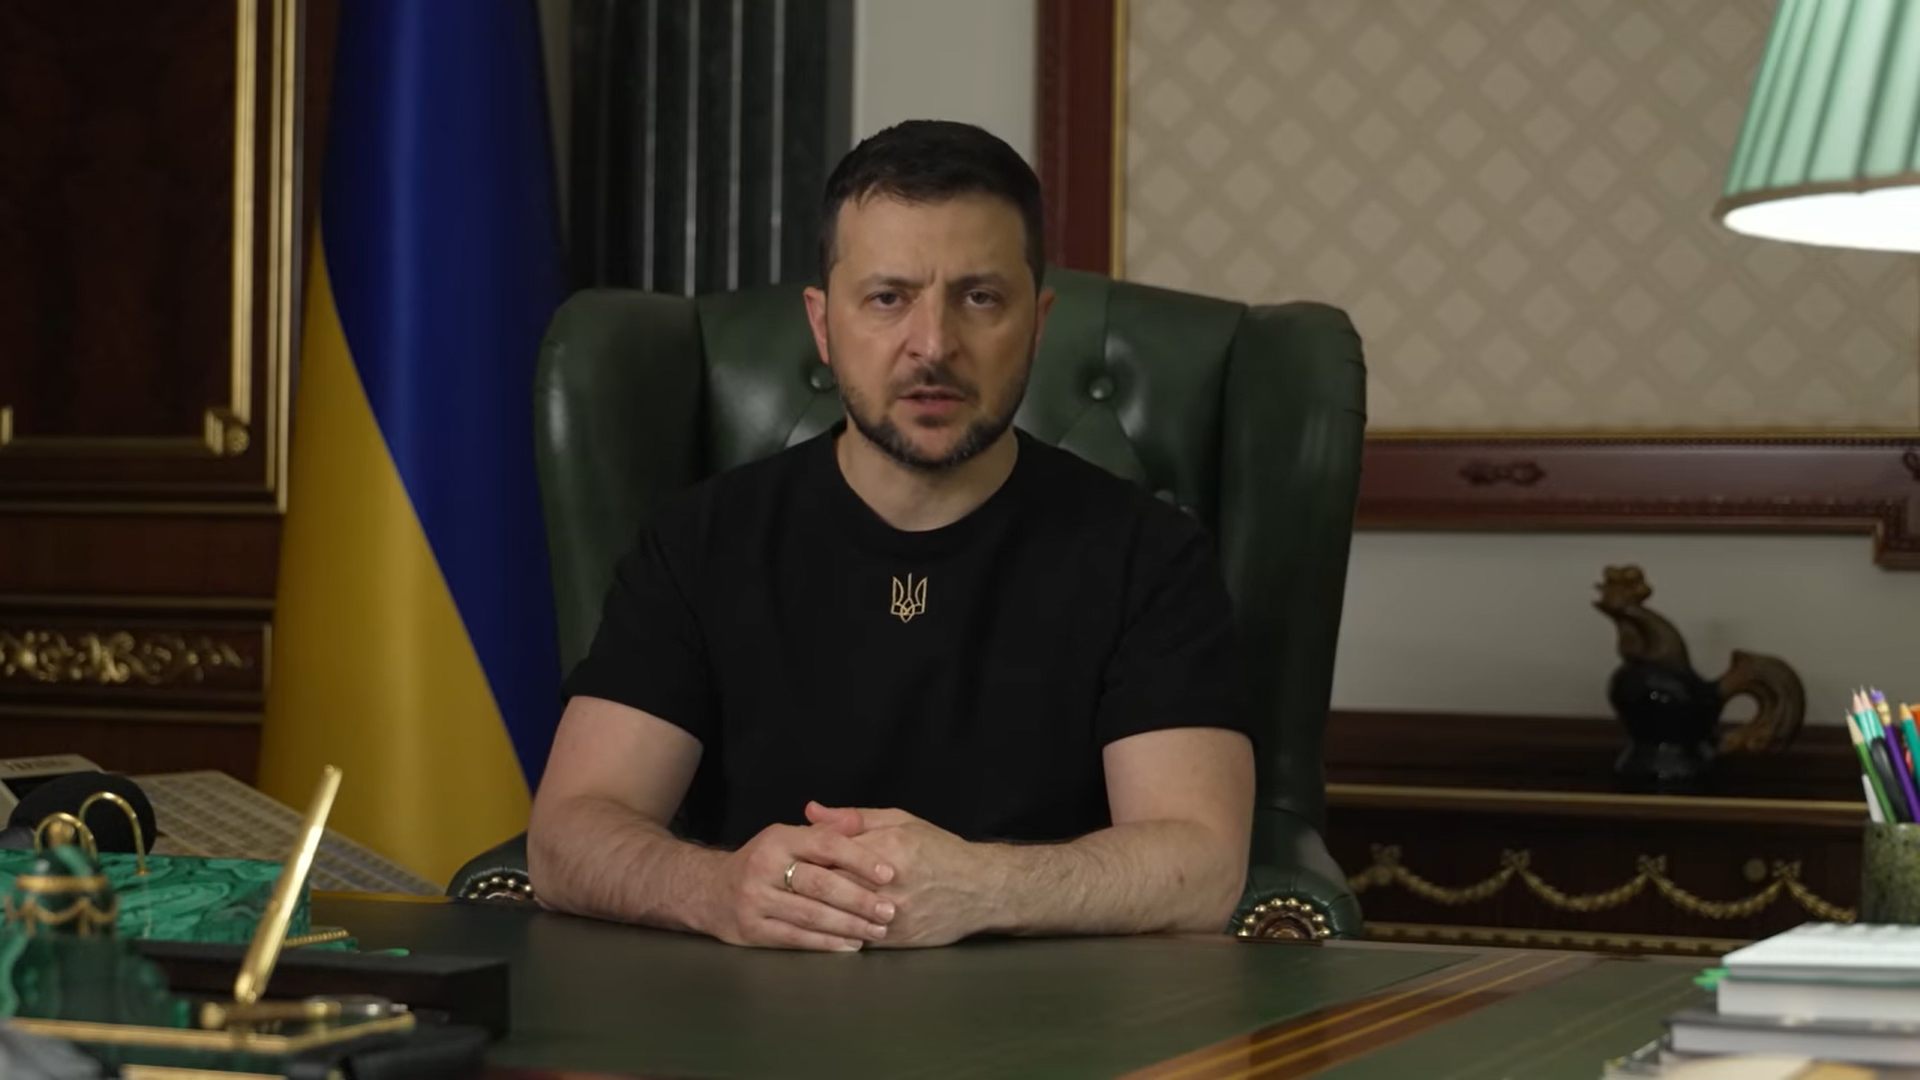 Preşedintele ucrainean Volodimir Zelenski i-a demis duminică seara pe procurorul general şi pe şeful serviciului de securitate din cauza suspiciunilor de trădare / Foto: captură ecran video Facebook